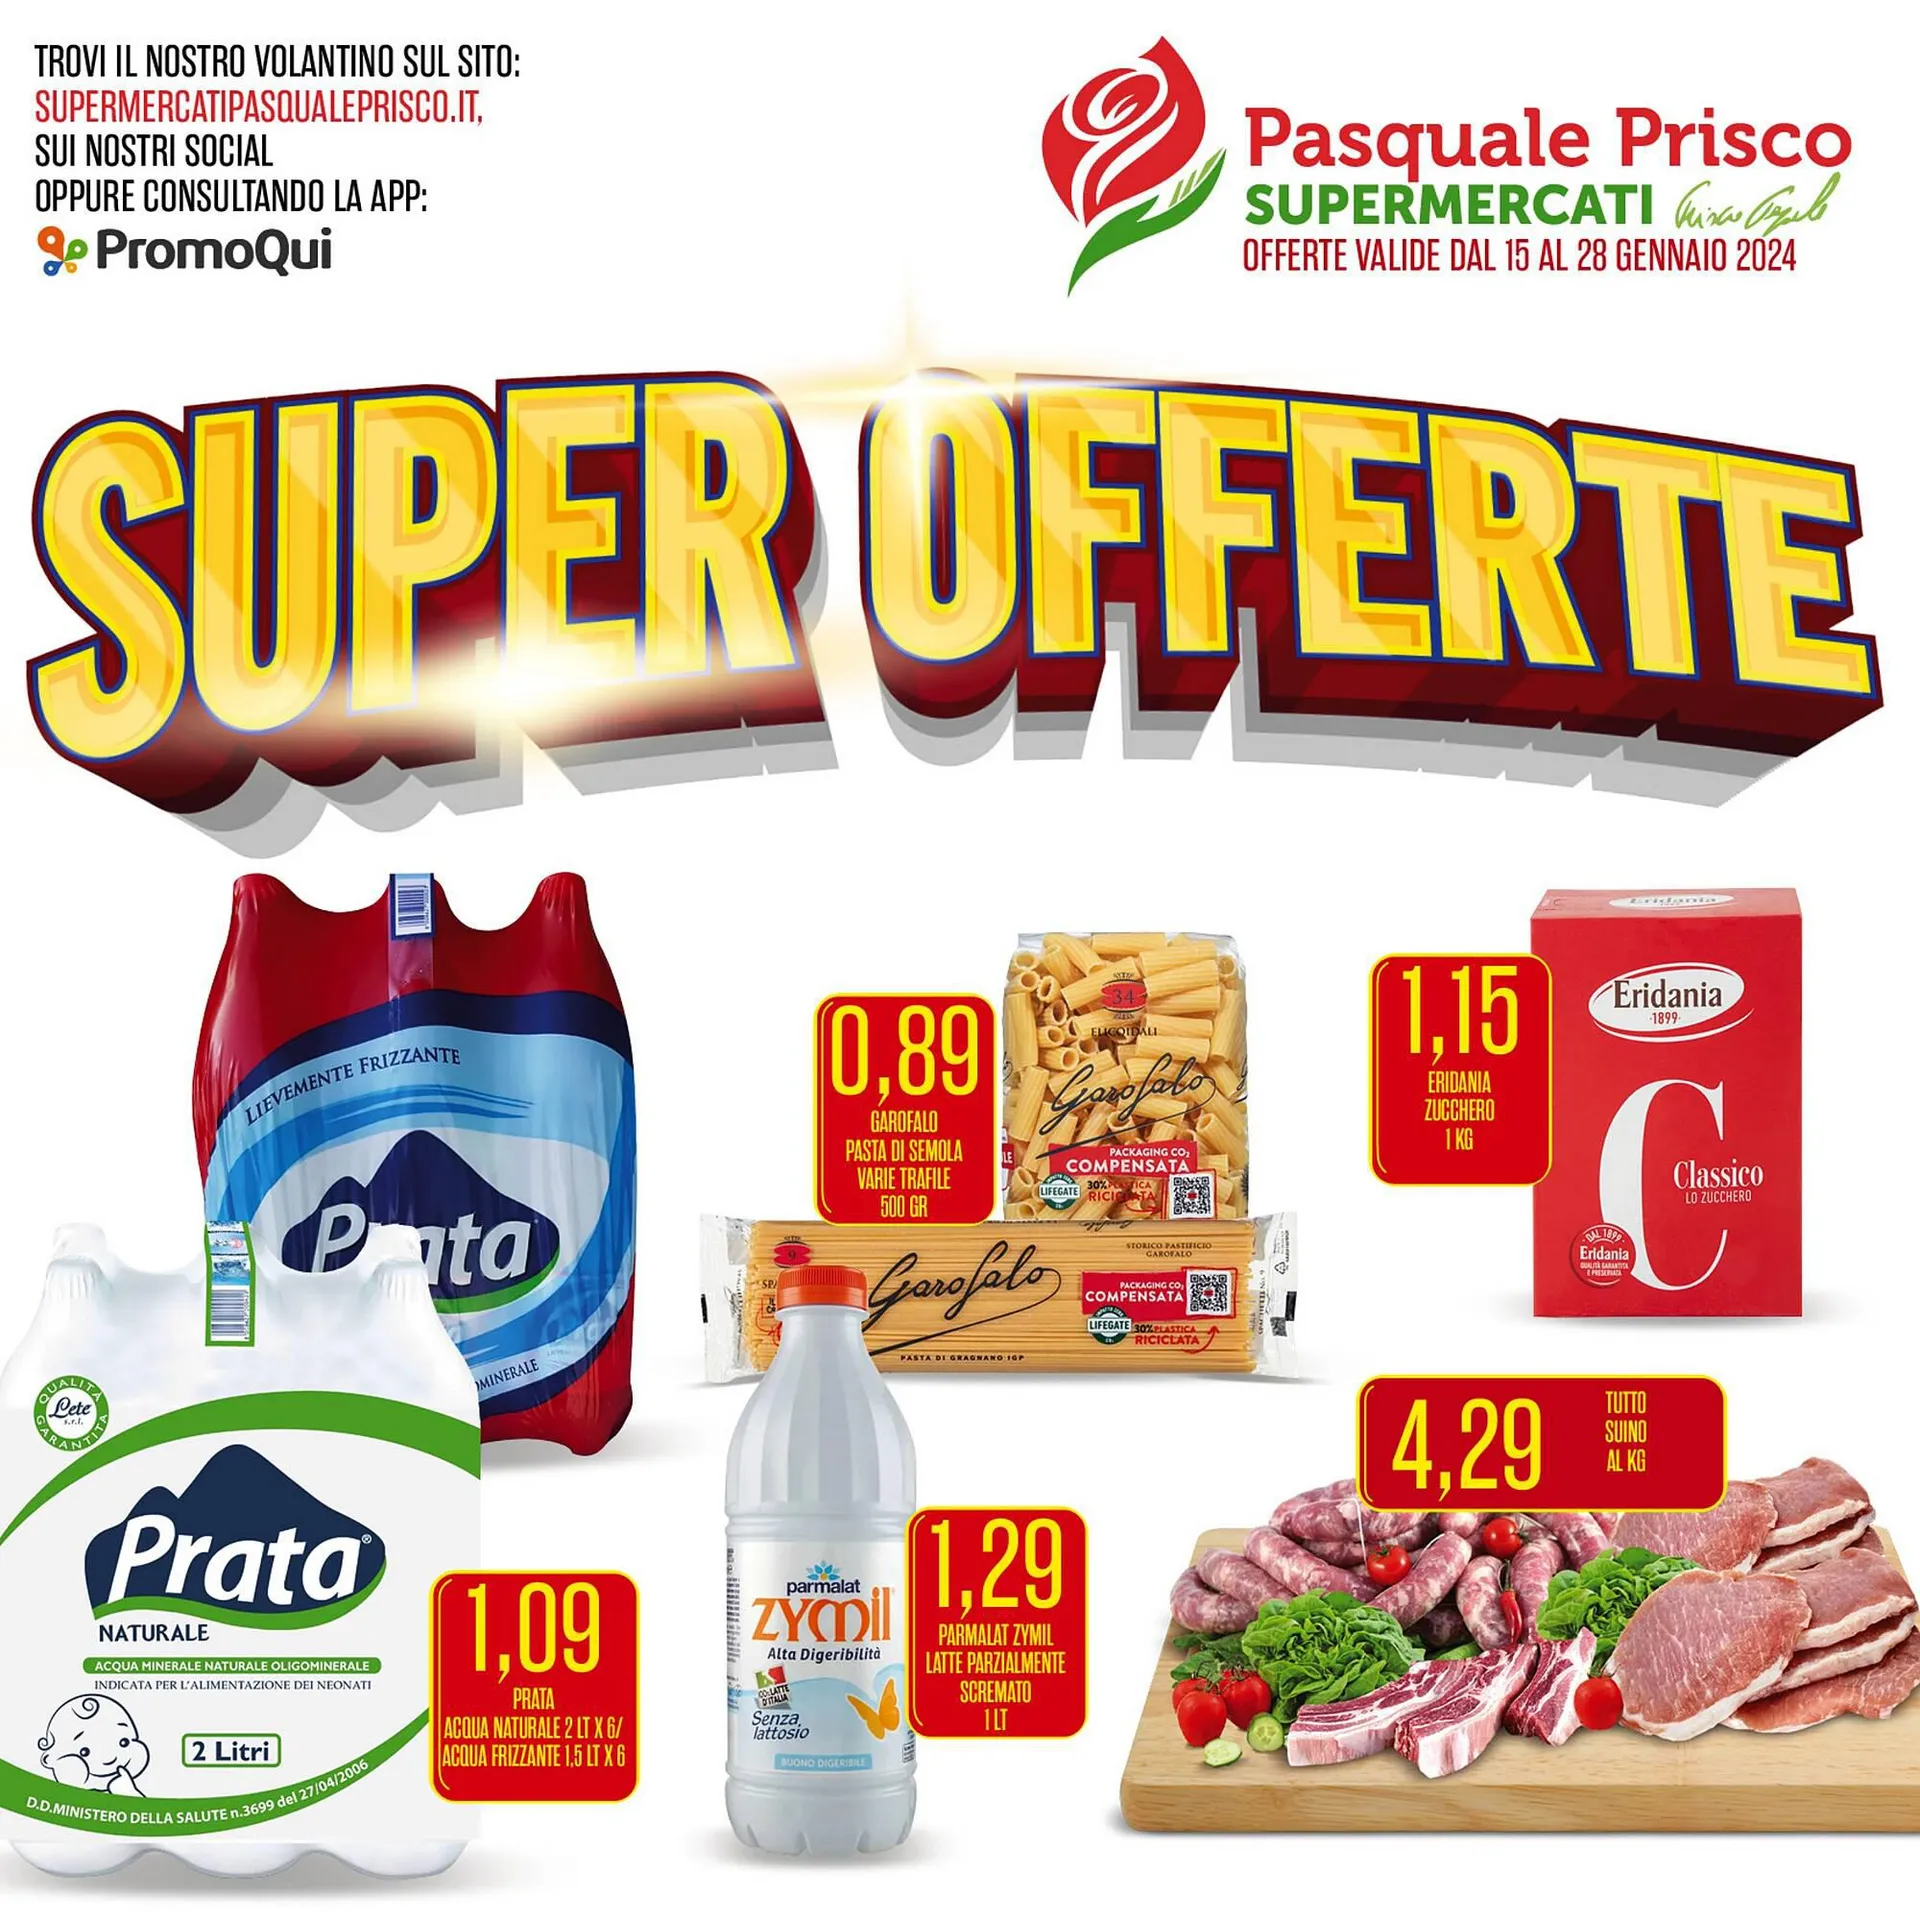 Volantino Supermercati Pasquale Prisco da 15 gennaio a 28 gennaio di 2024 - Pagina del volantino 